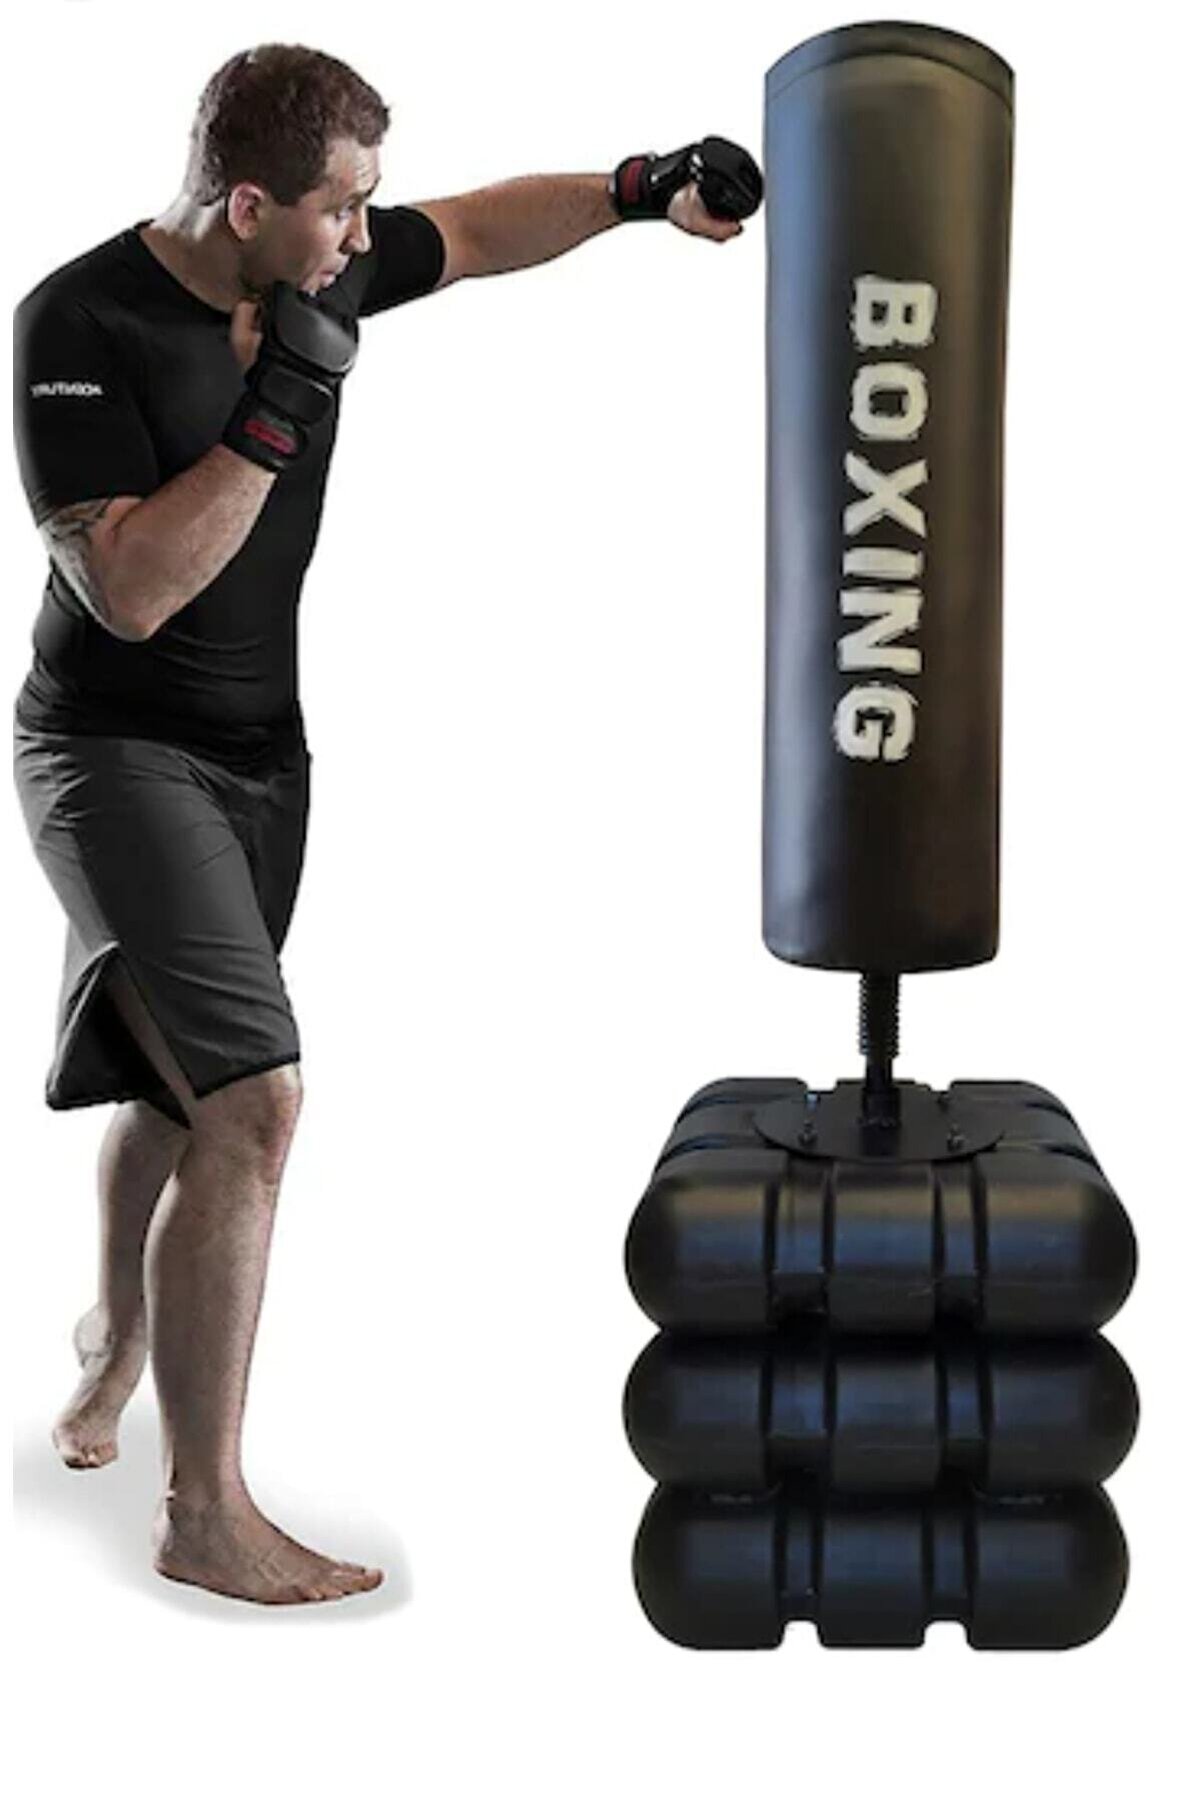 A Boxing Ayaklı Boks Standı 175 Cm Salon Torbası